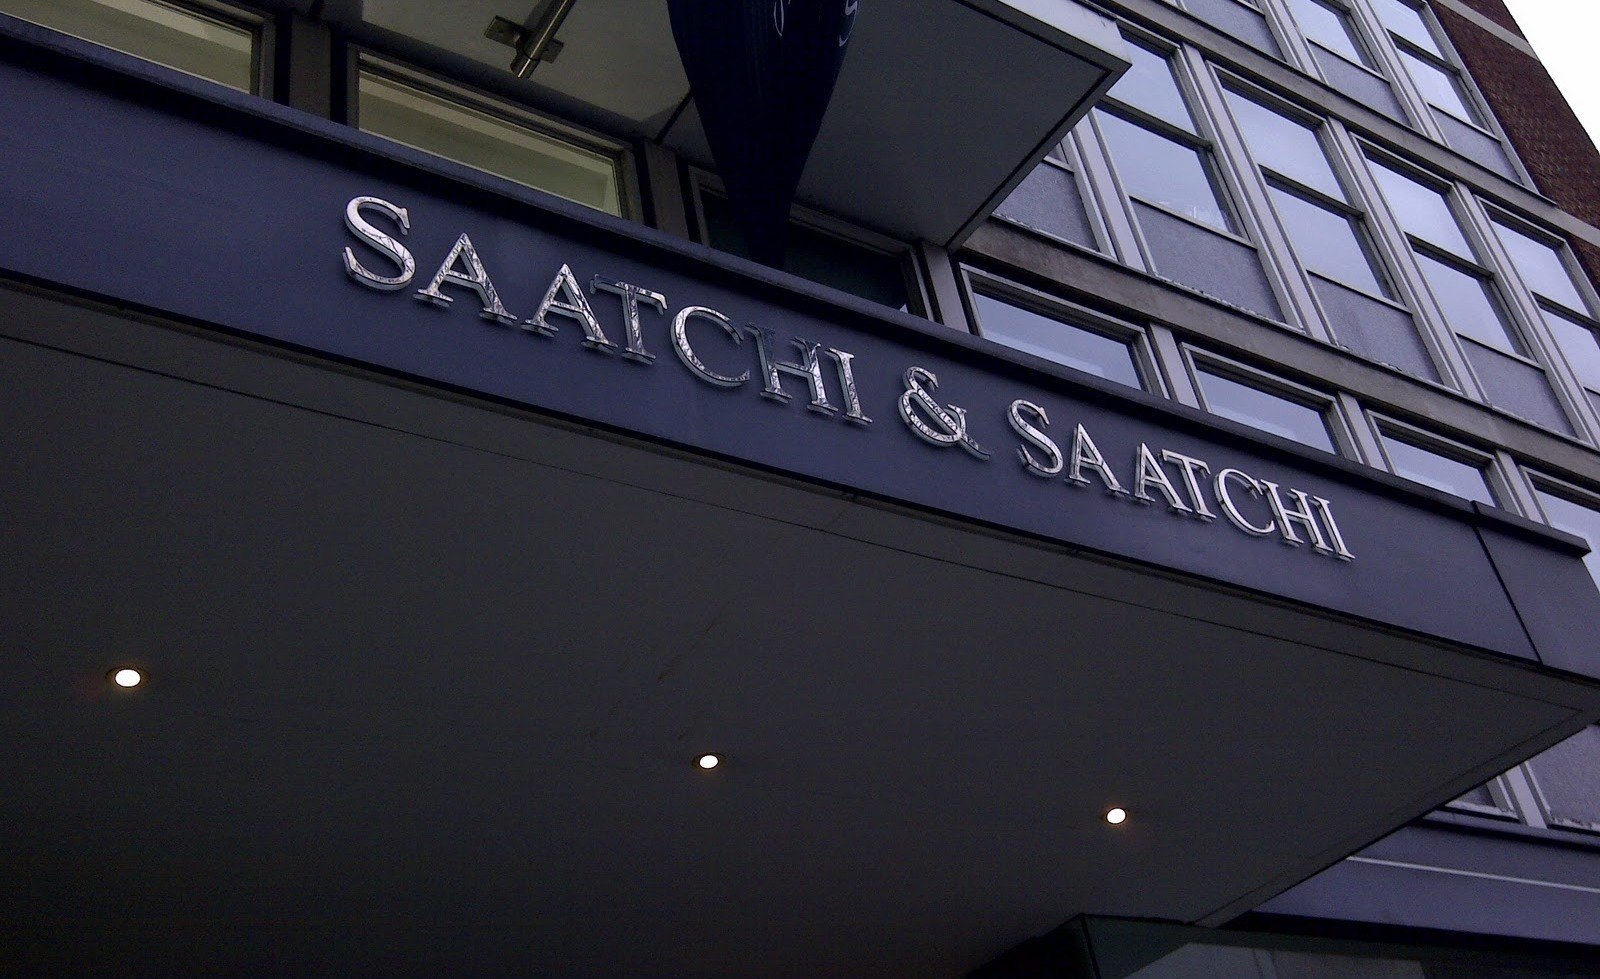 Saatchi & Saatchi wzmacnia dział Client Service Toyota Saatchi Saatchi mediarun com